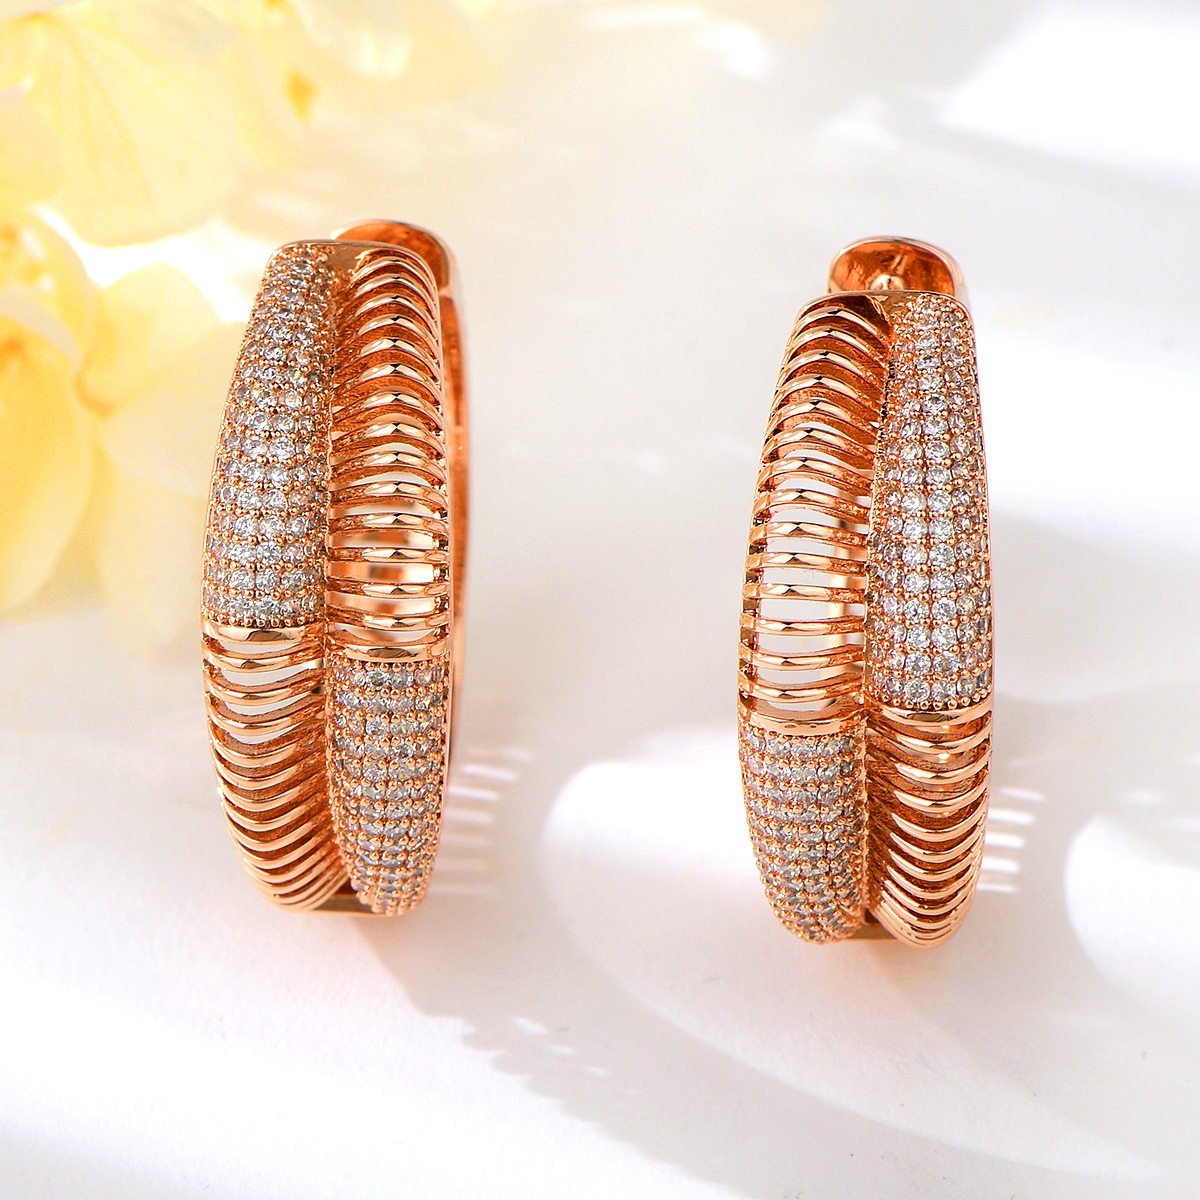 Copper or Brass Cubic Zirconia Huggie Earrings in Exclusive Design